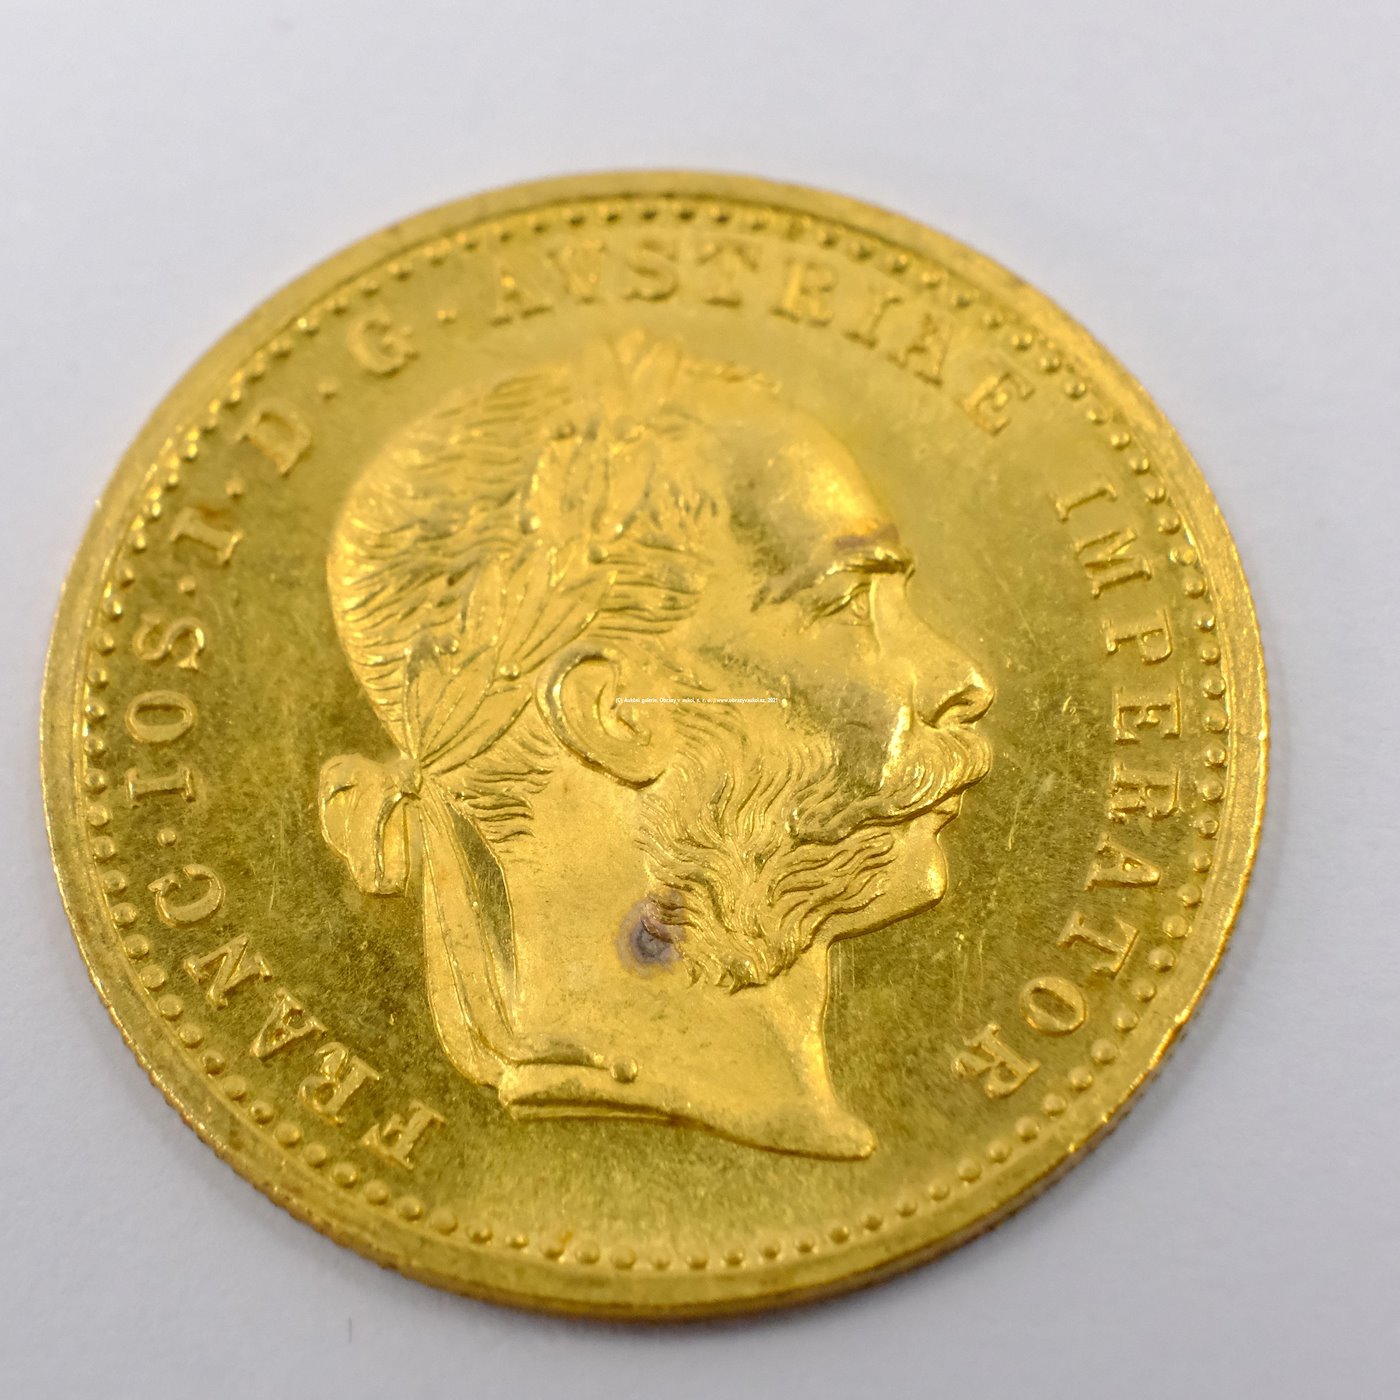 .. - Rakousko Uhersko zlatý 1 dukát 1904.  Zlato 986/1000, hrubá hmotnost mince 3,491g